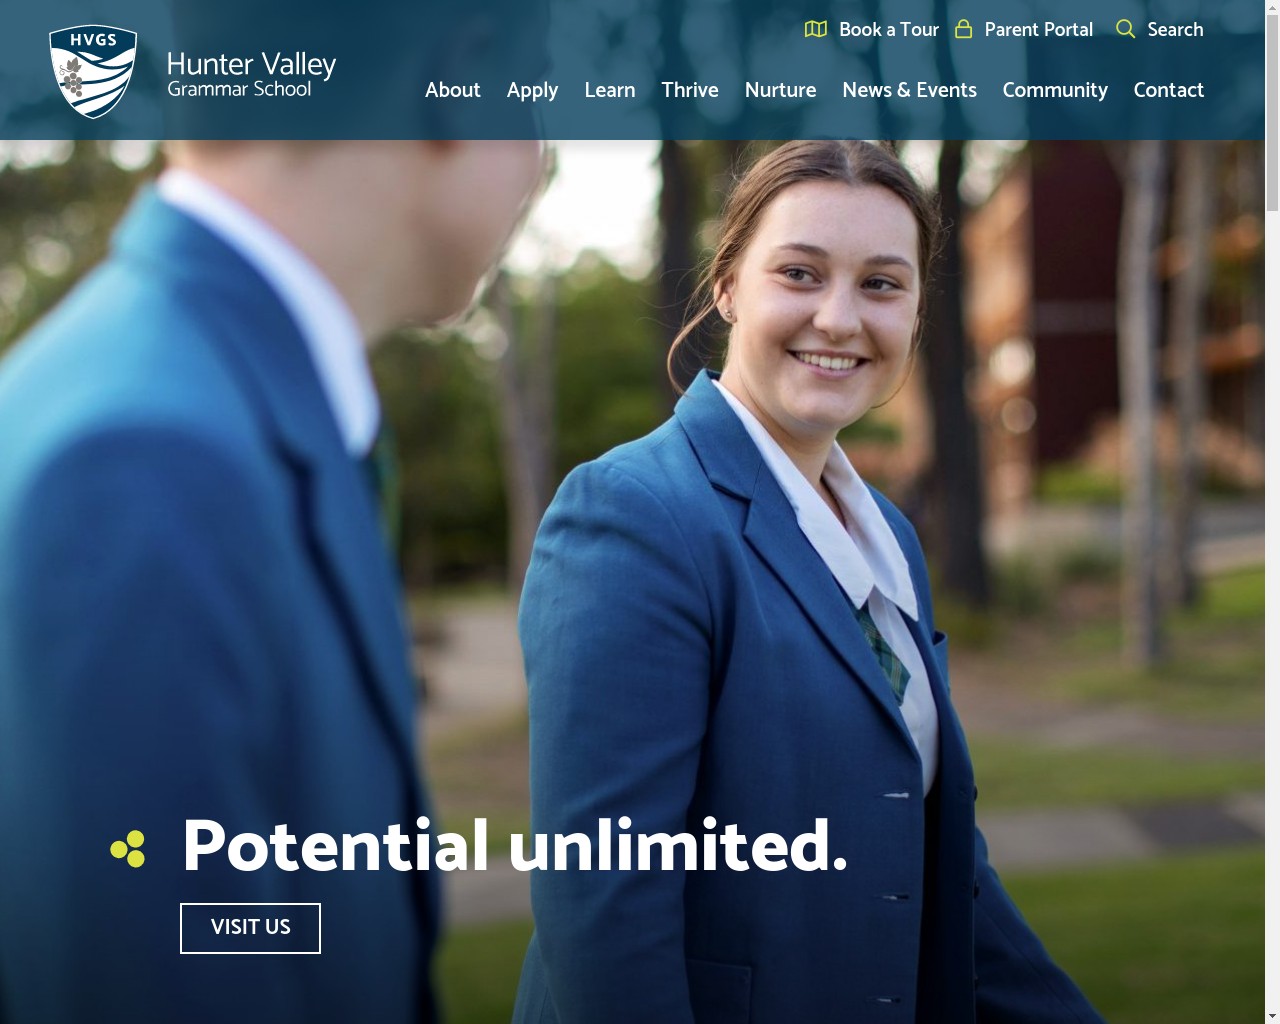 Hunter Valley Grammar School